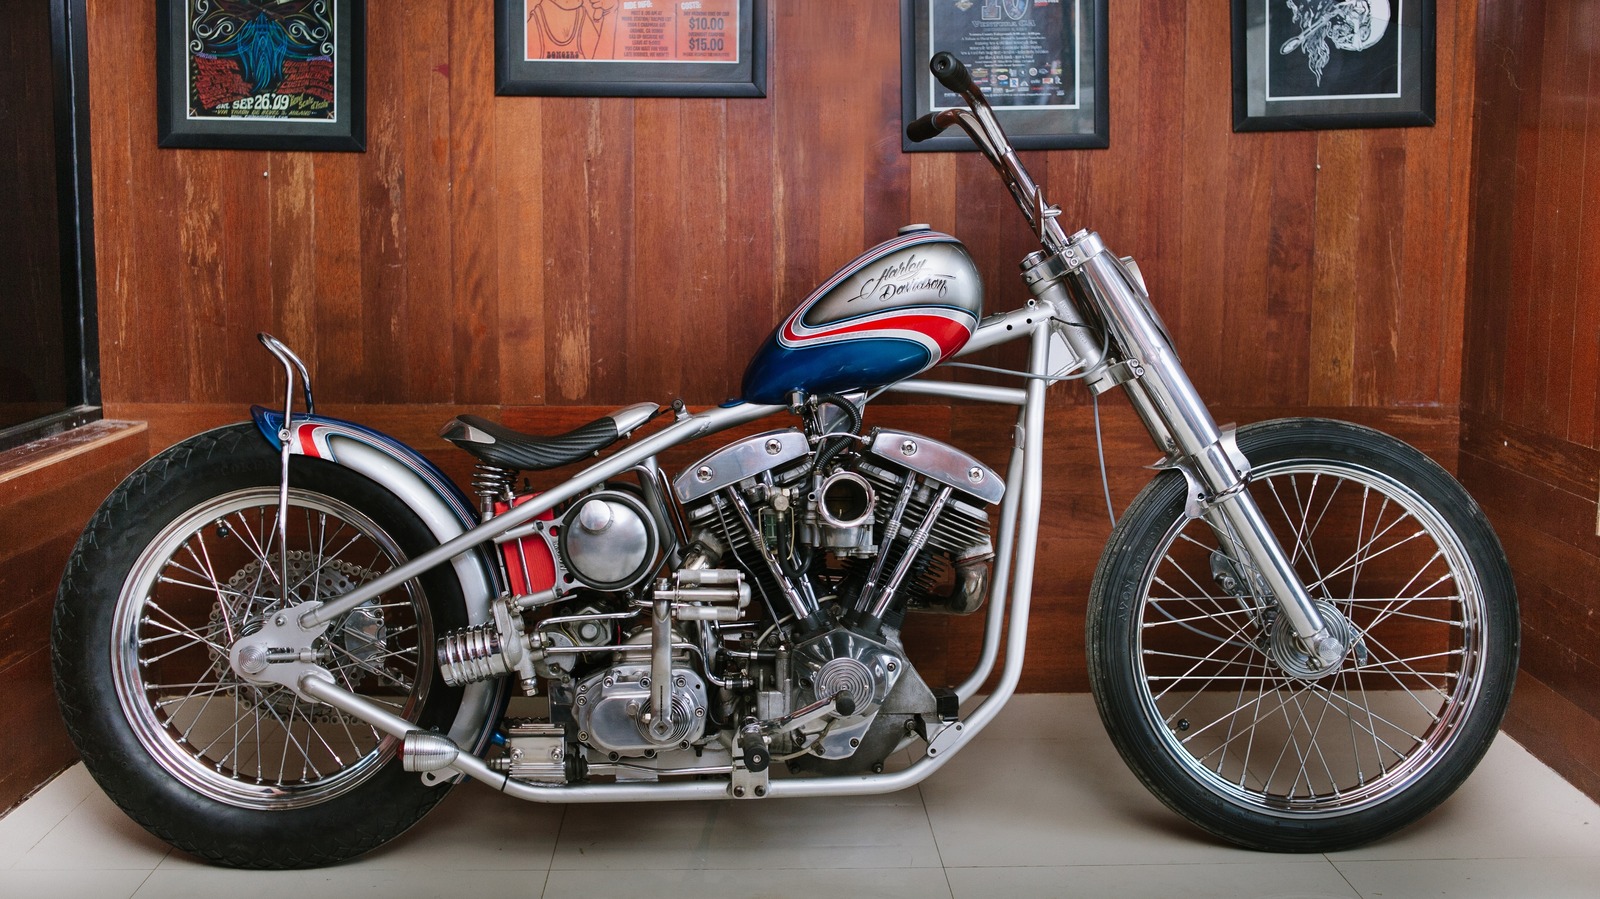 ¿Cómo obtuvo su nombre el motor Harley-Davidson Shovelhead?